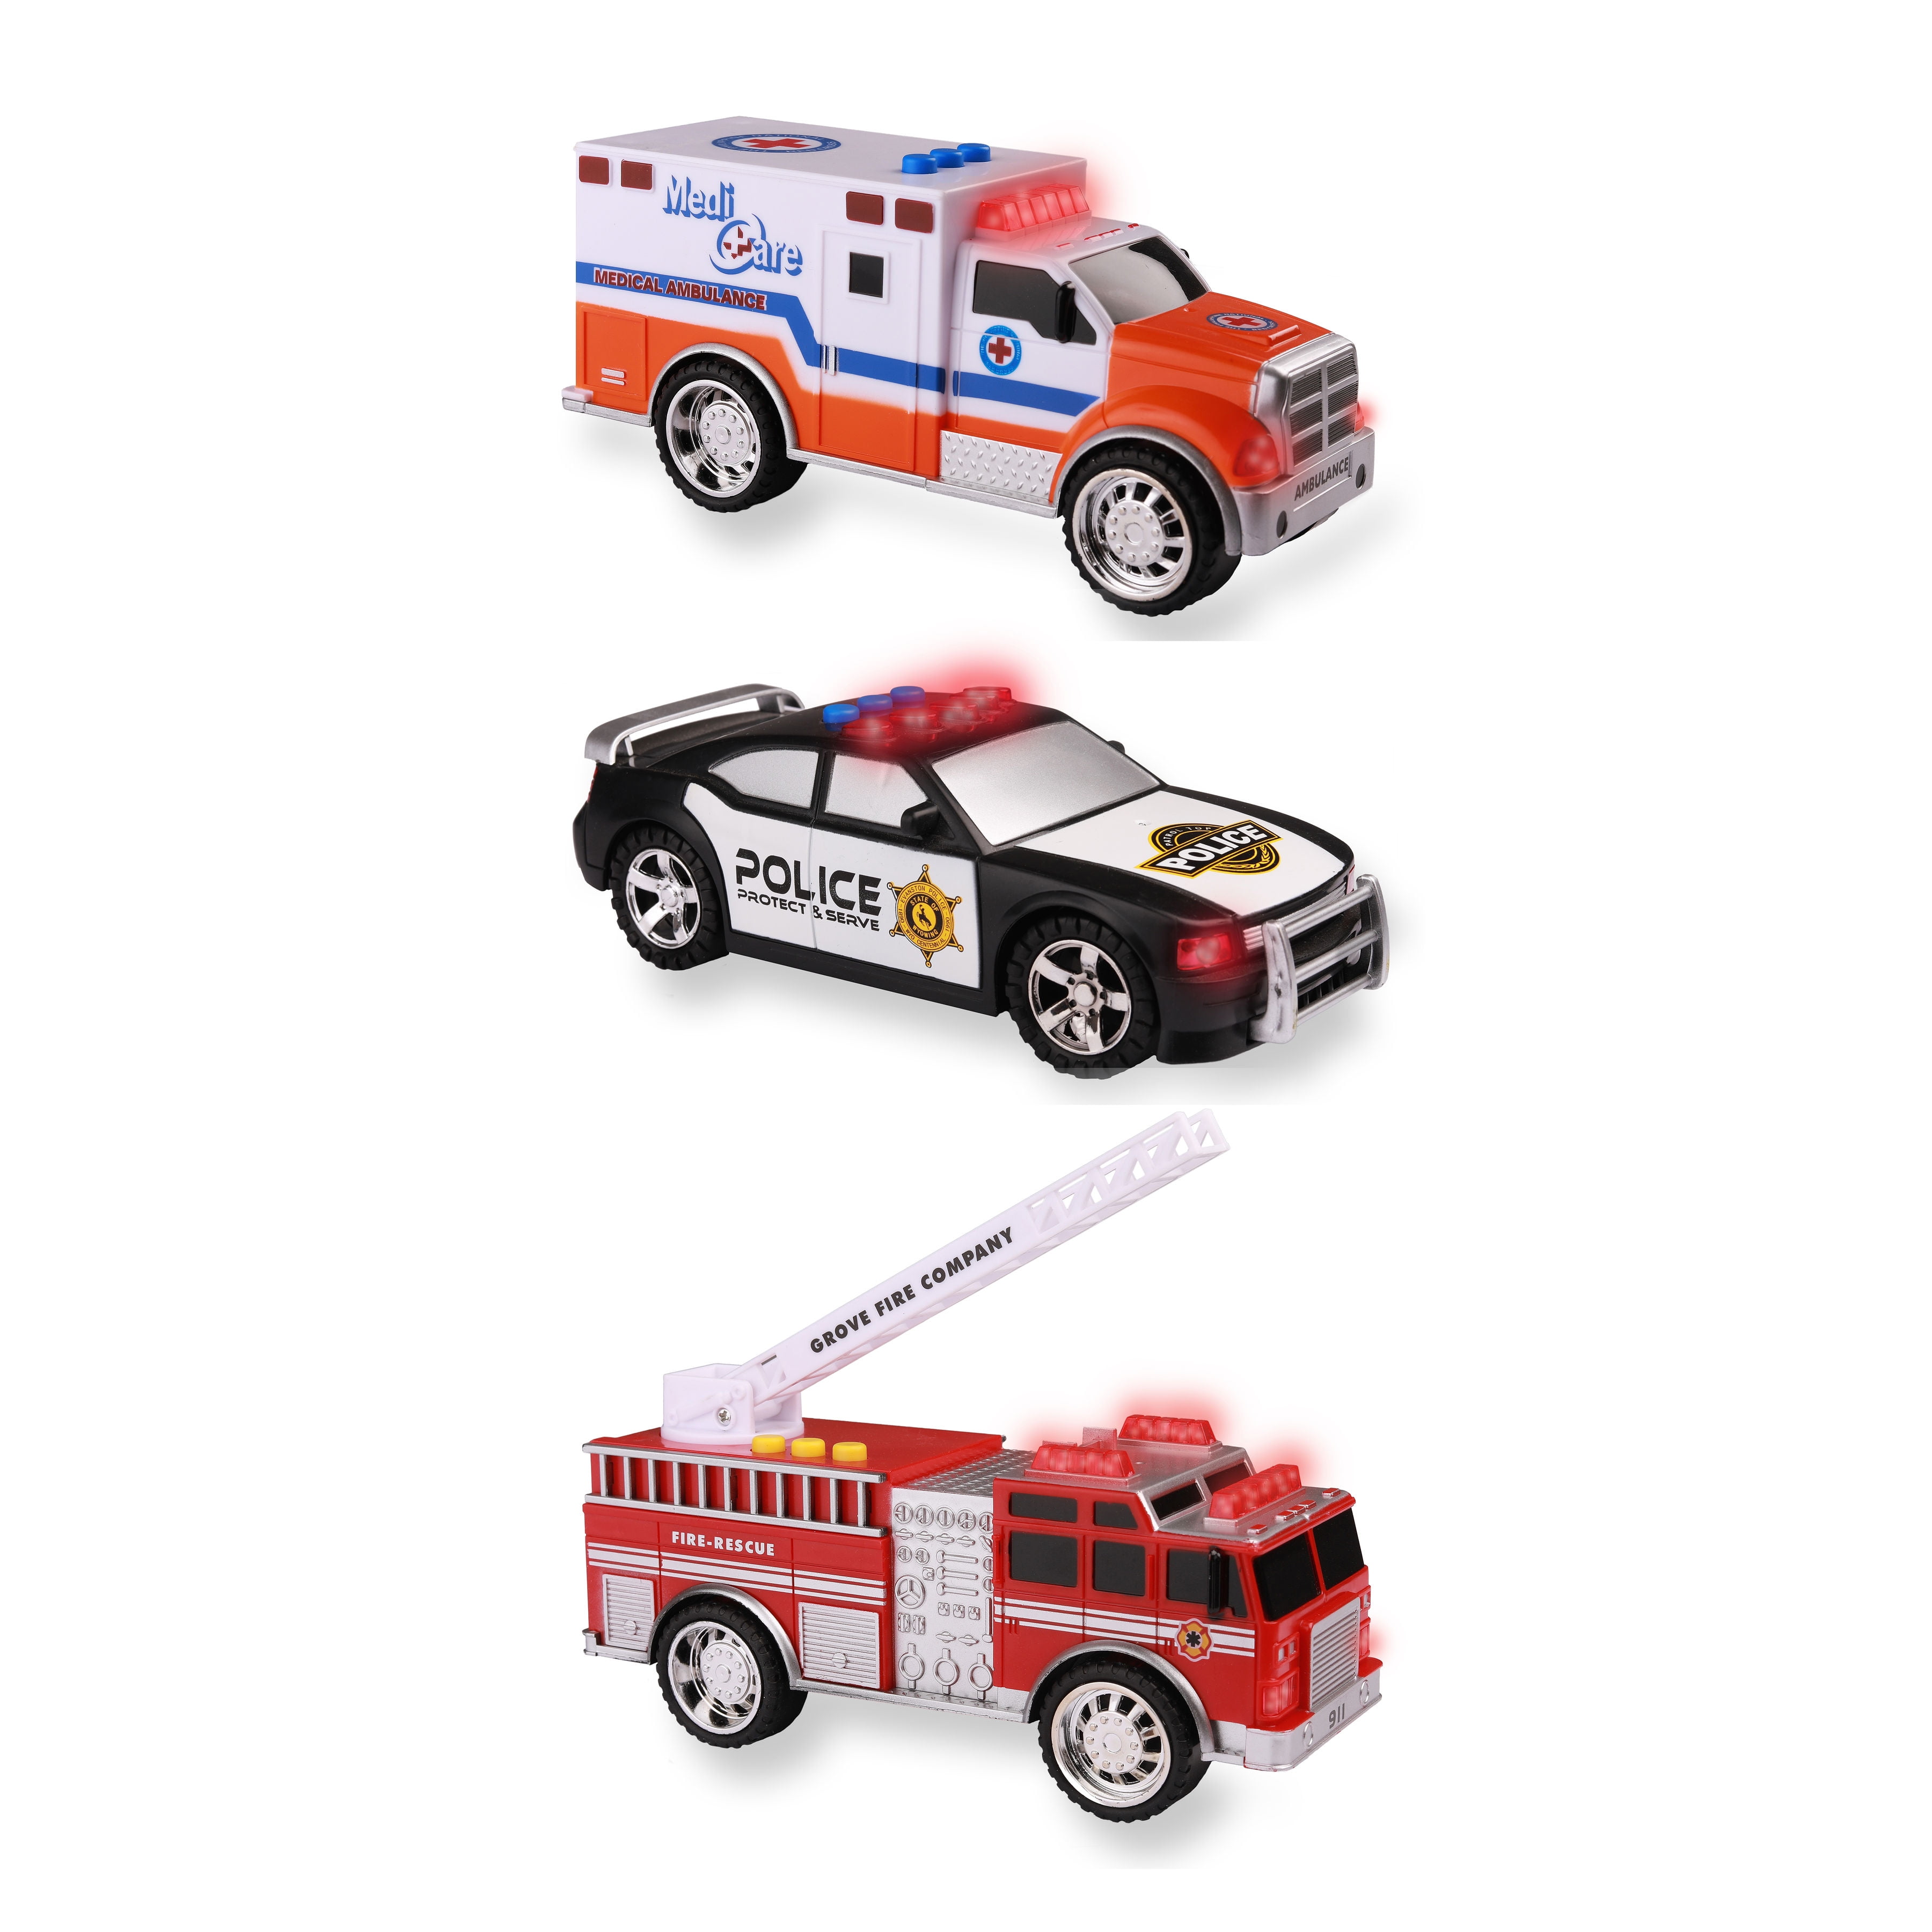 small toy ambulance